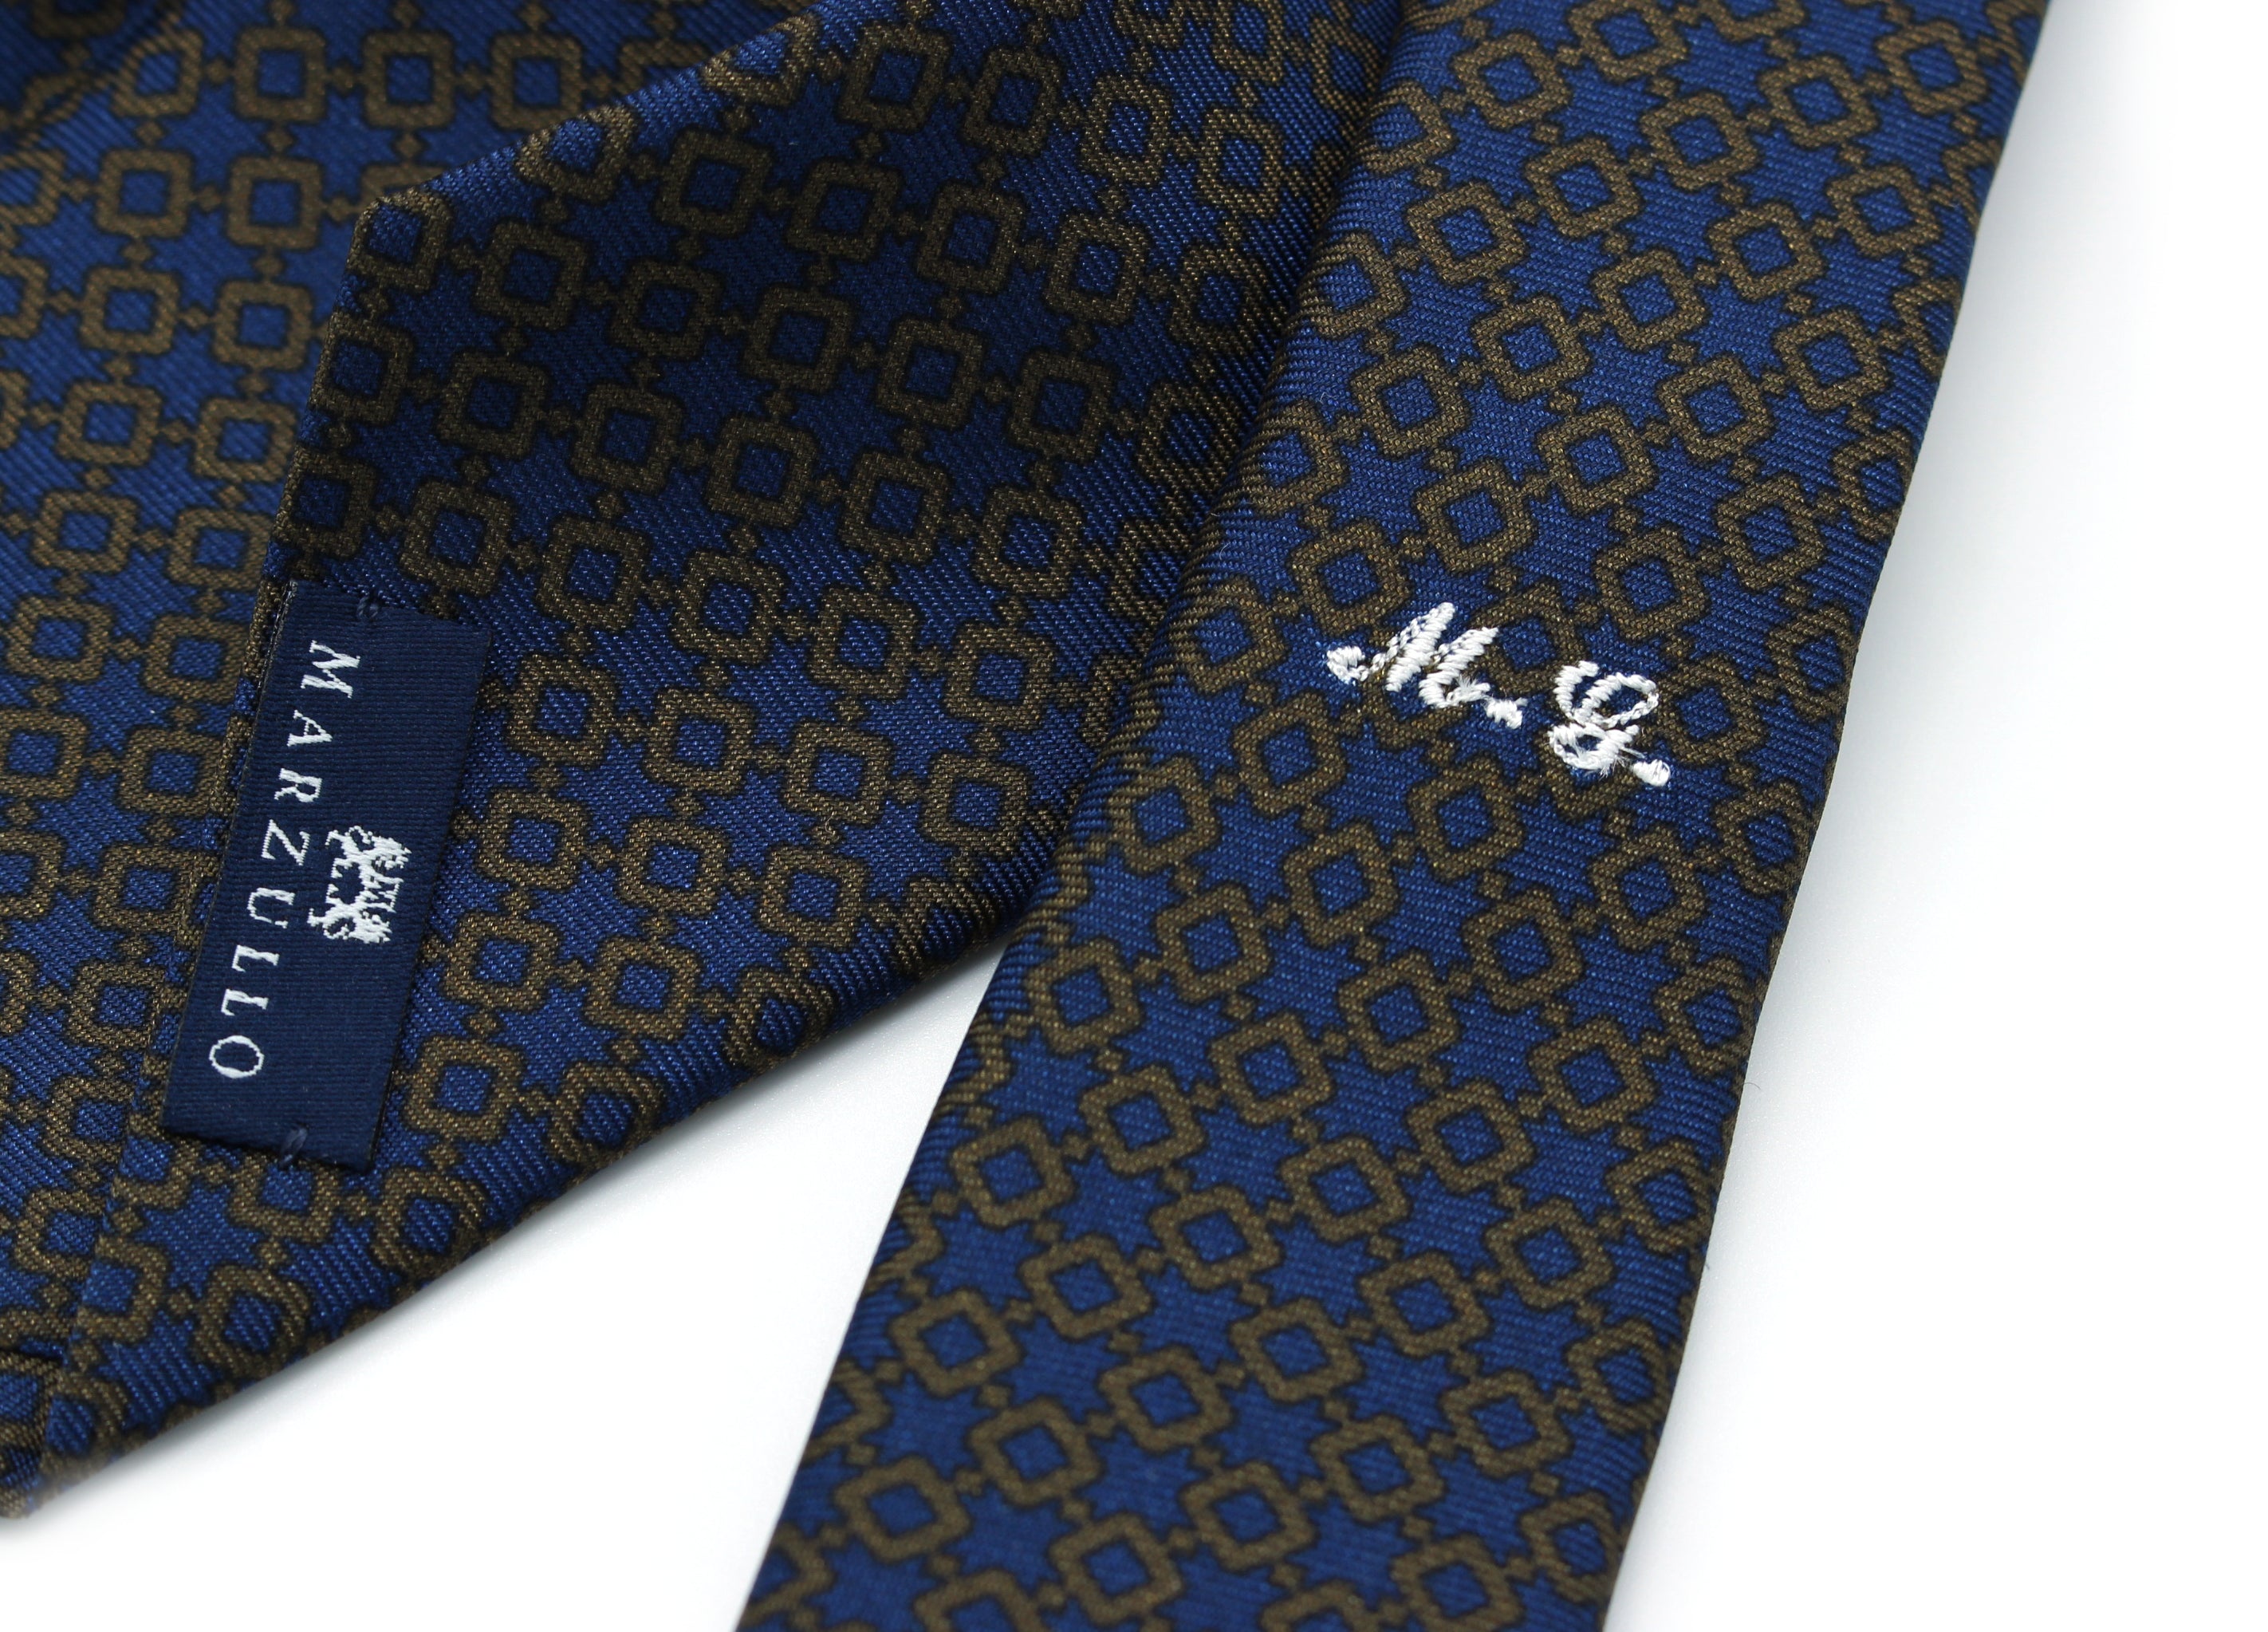 Marzullo cravatta sette pieghe su misura -